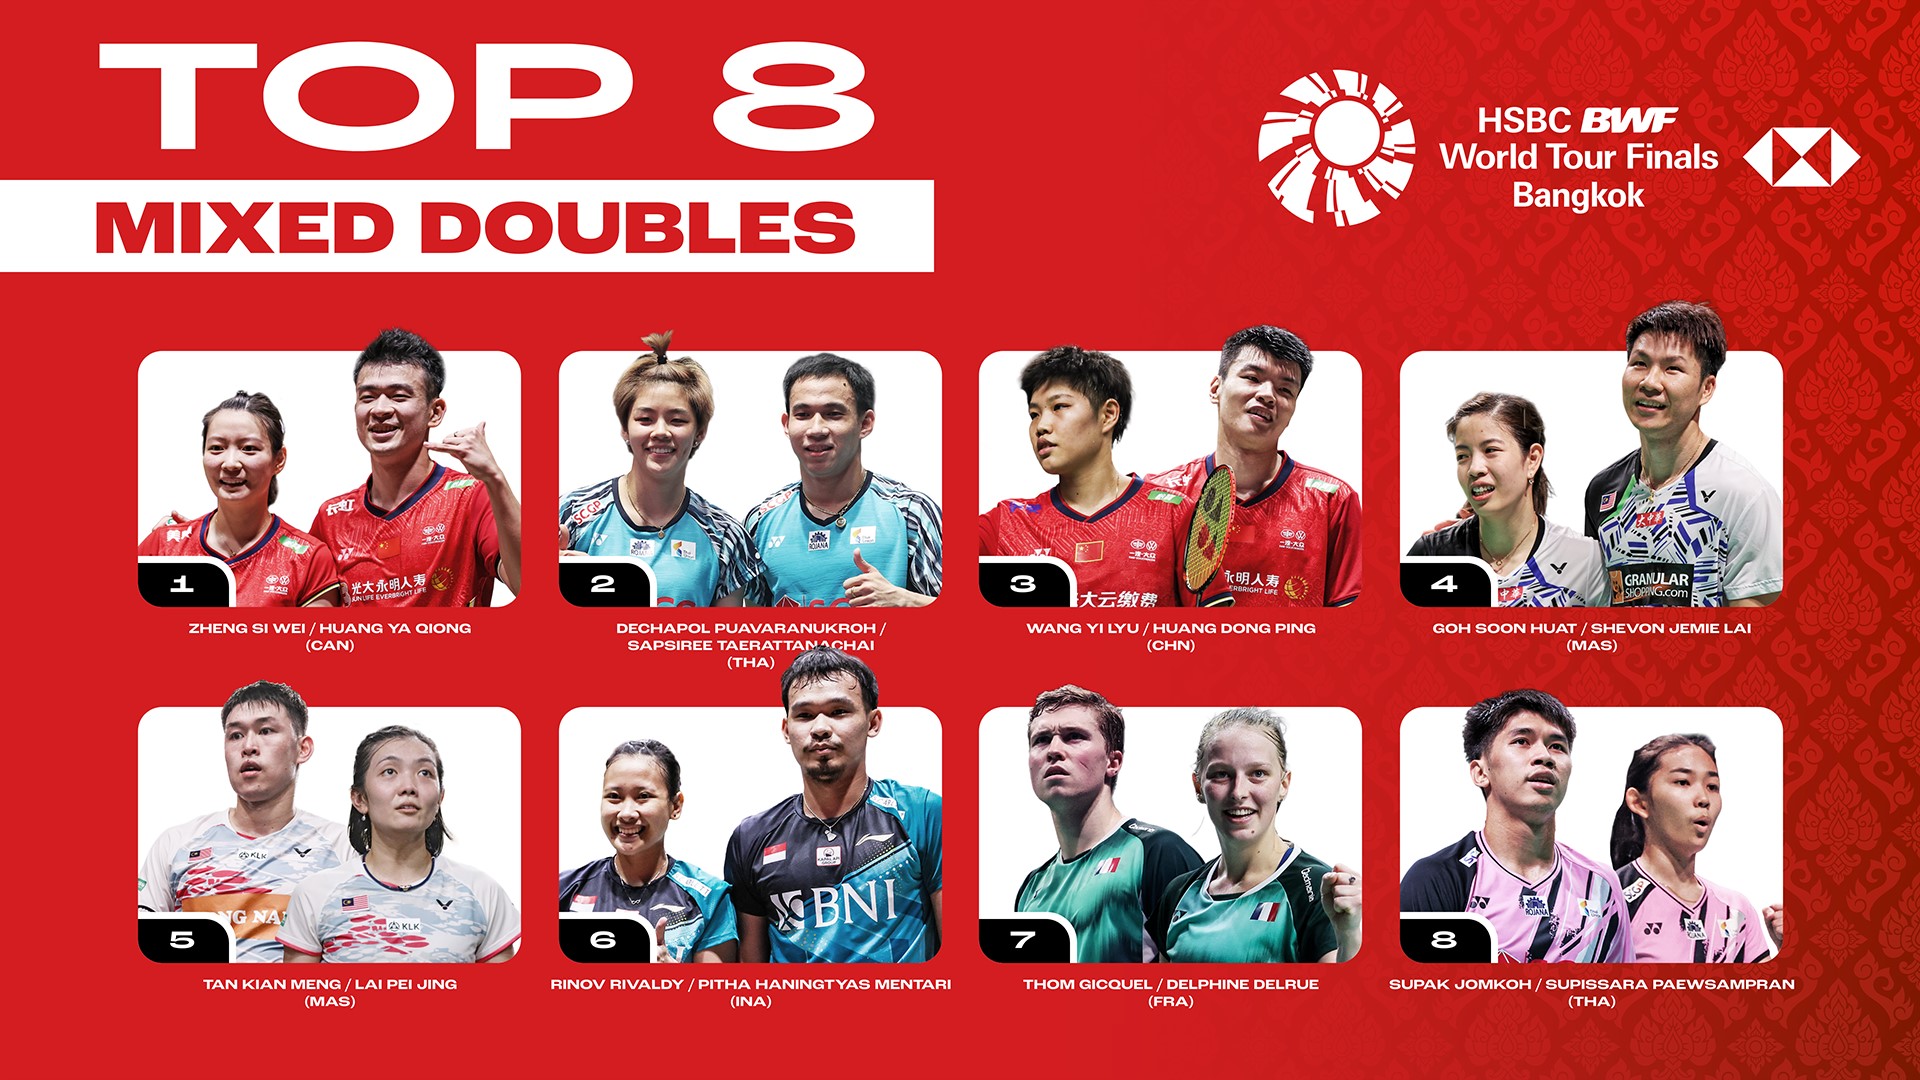 HSBC BWF World Tour Finals 2022 Mixed Doubles Top 8.jpg